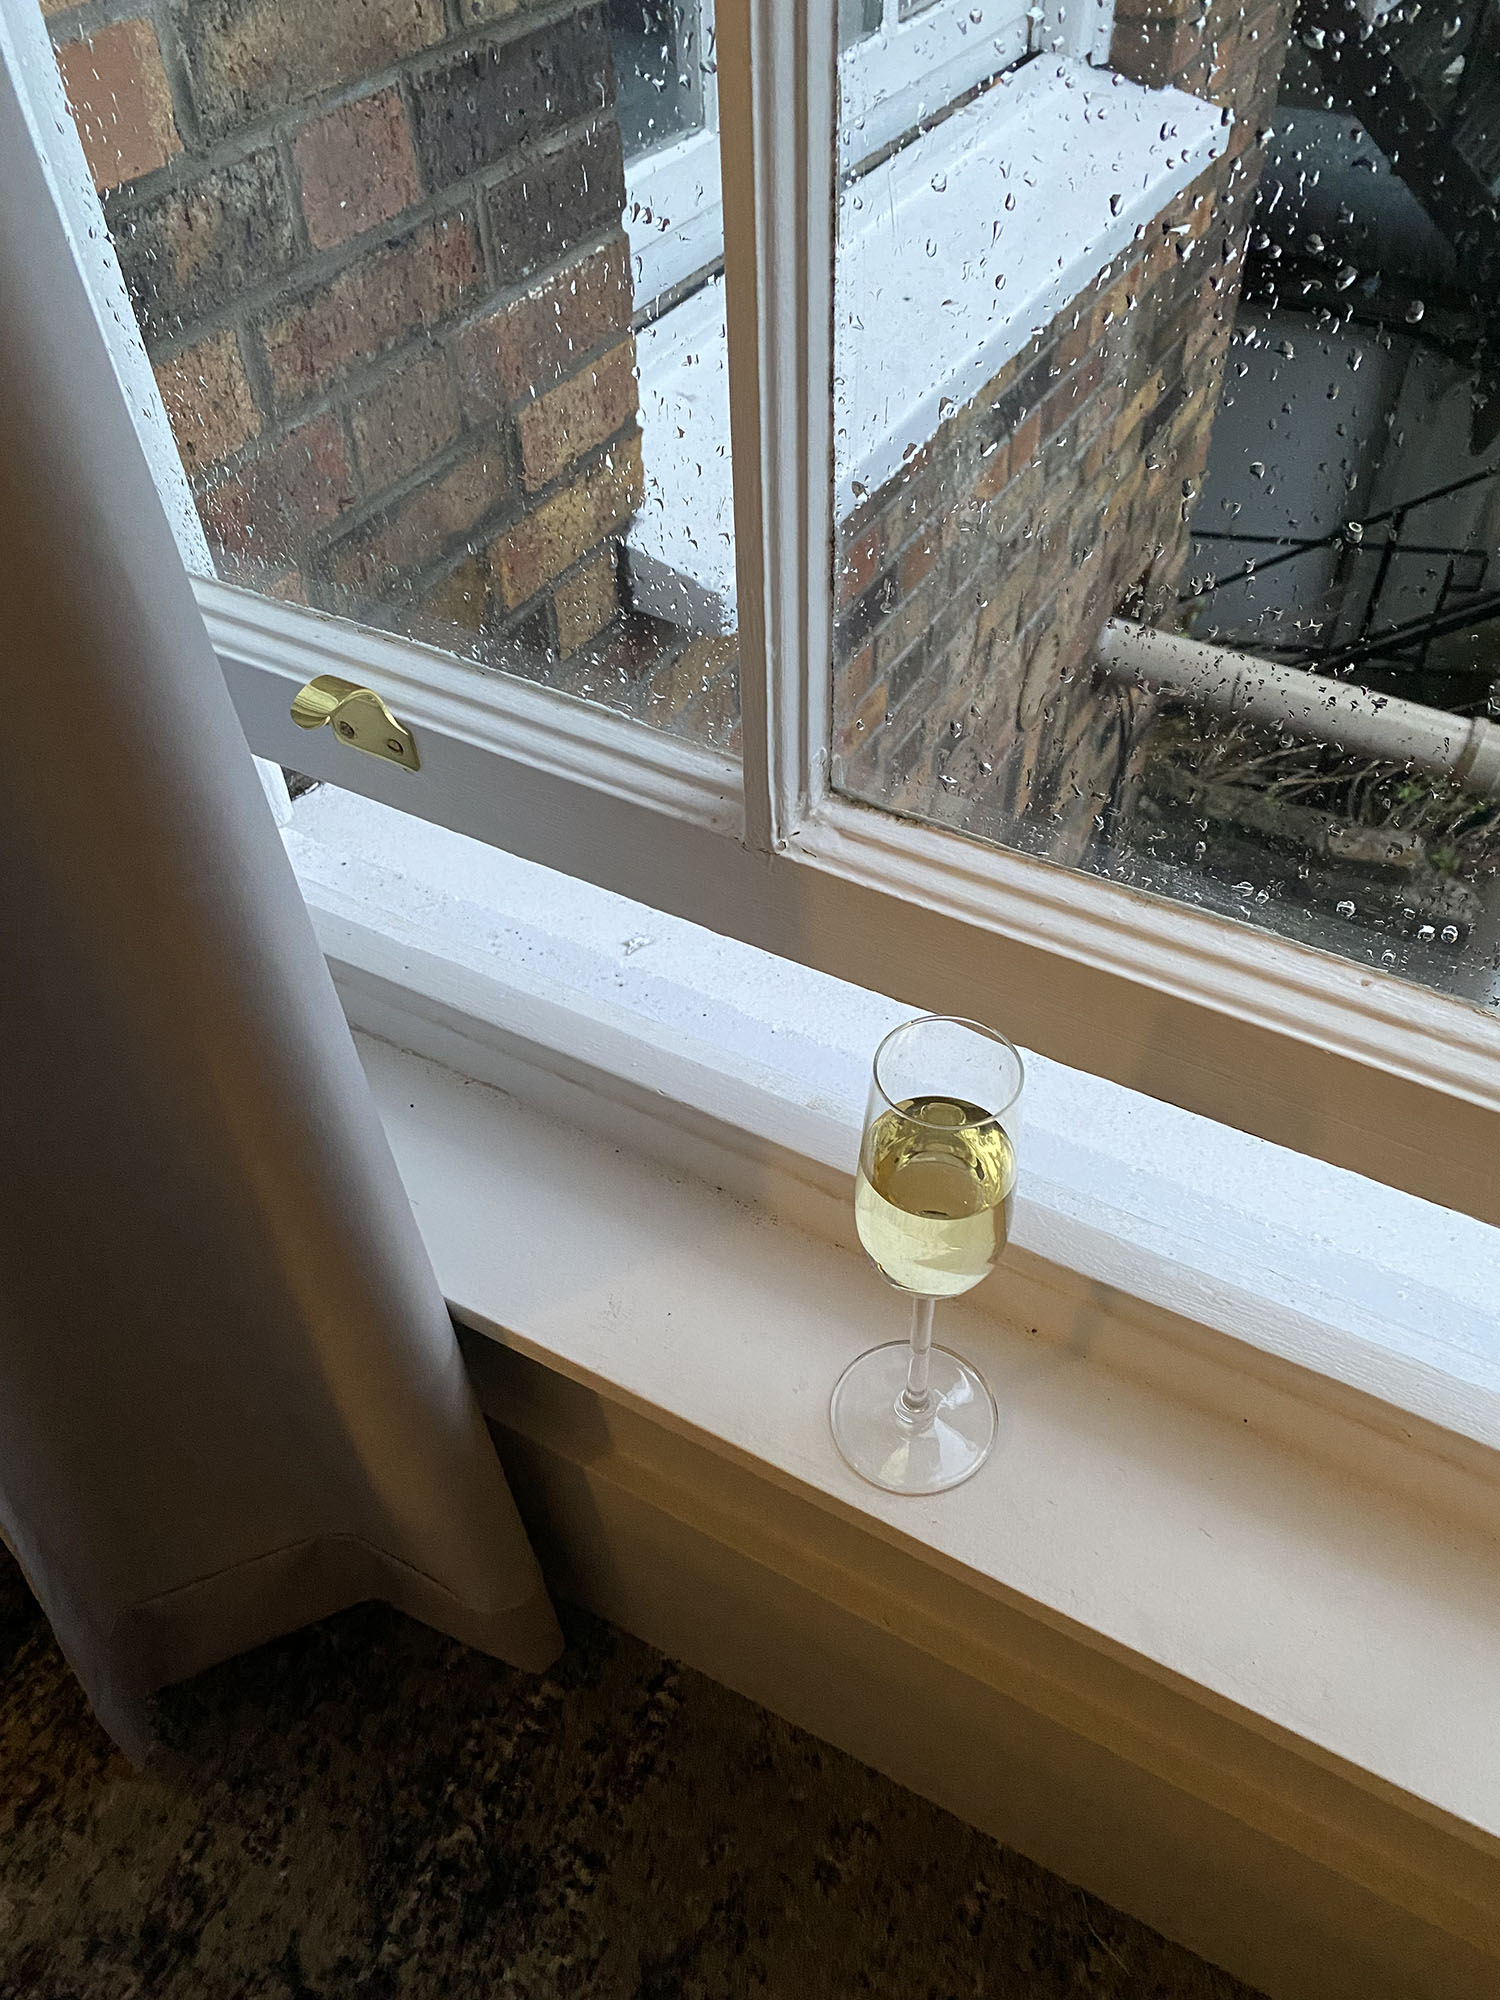 Coco & Vera - Glass of white wine on a window sill in rainy Dublin